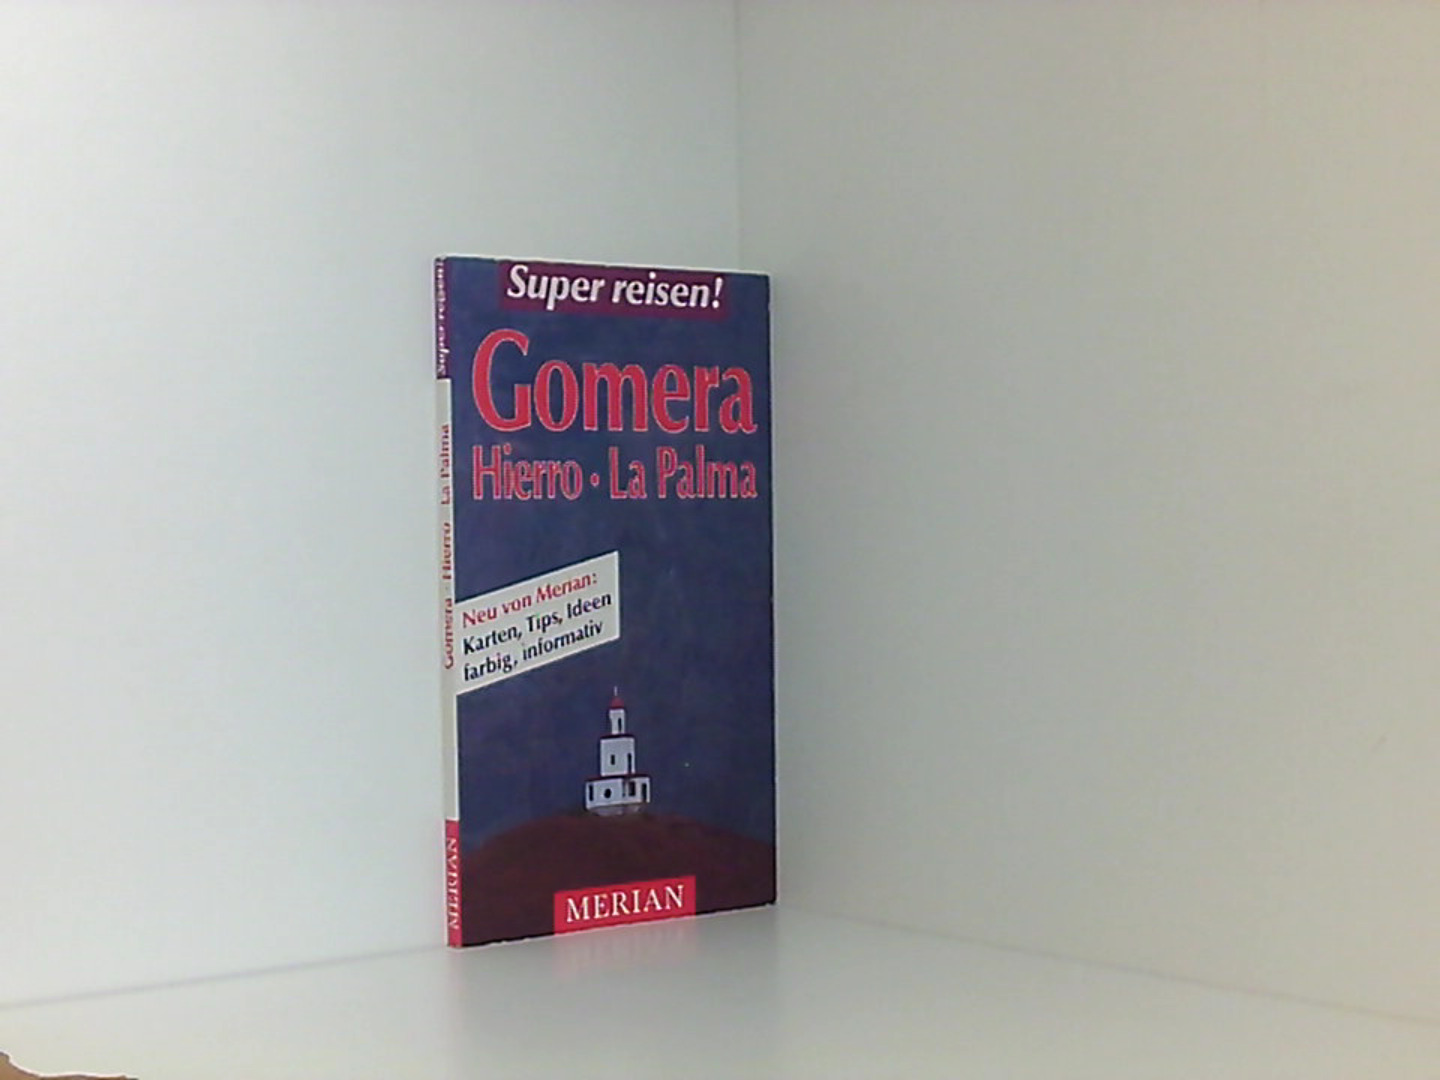 Gomera, Hierro, La Palma. Merian Super reisen. (7364 253)  1. Aufl., [Nachdr.] - Studemund-Halevy, Michael